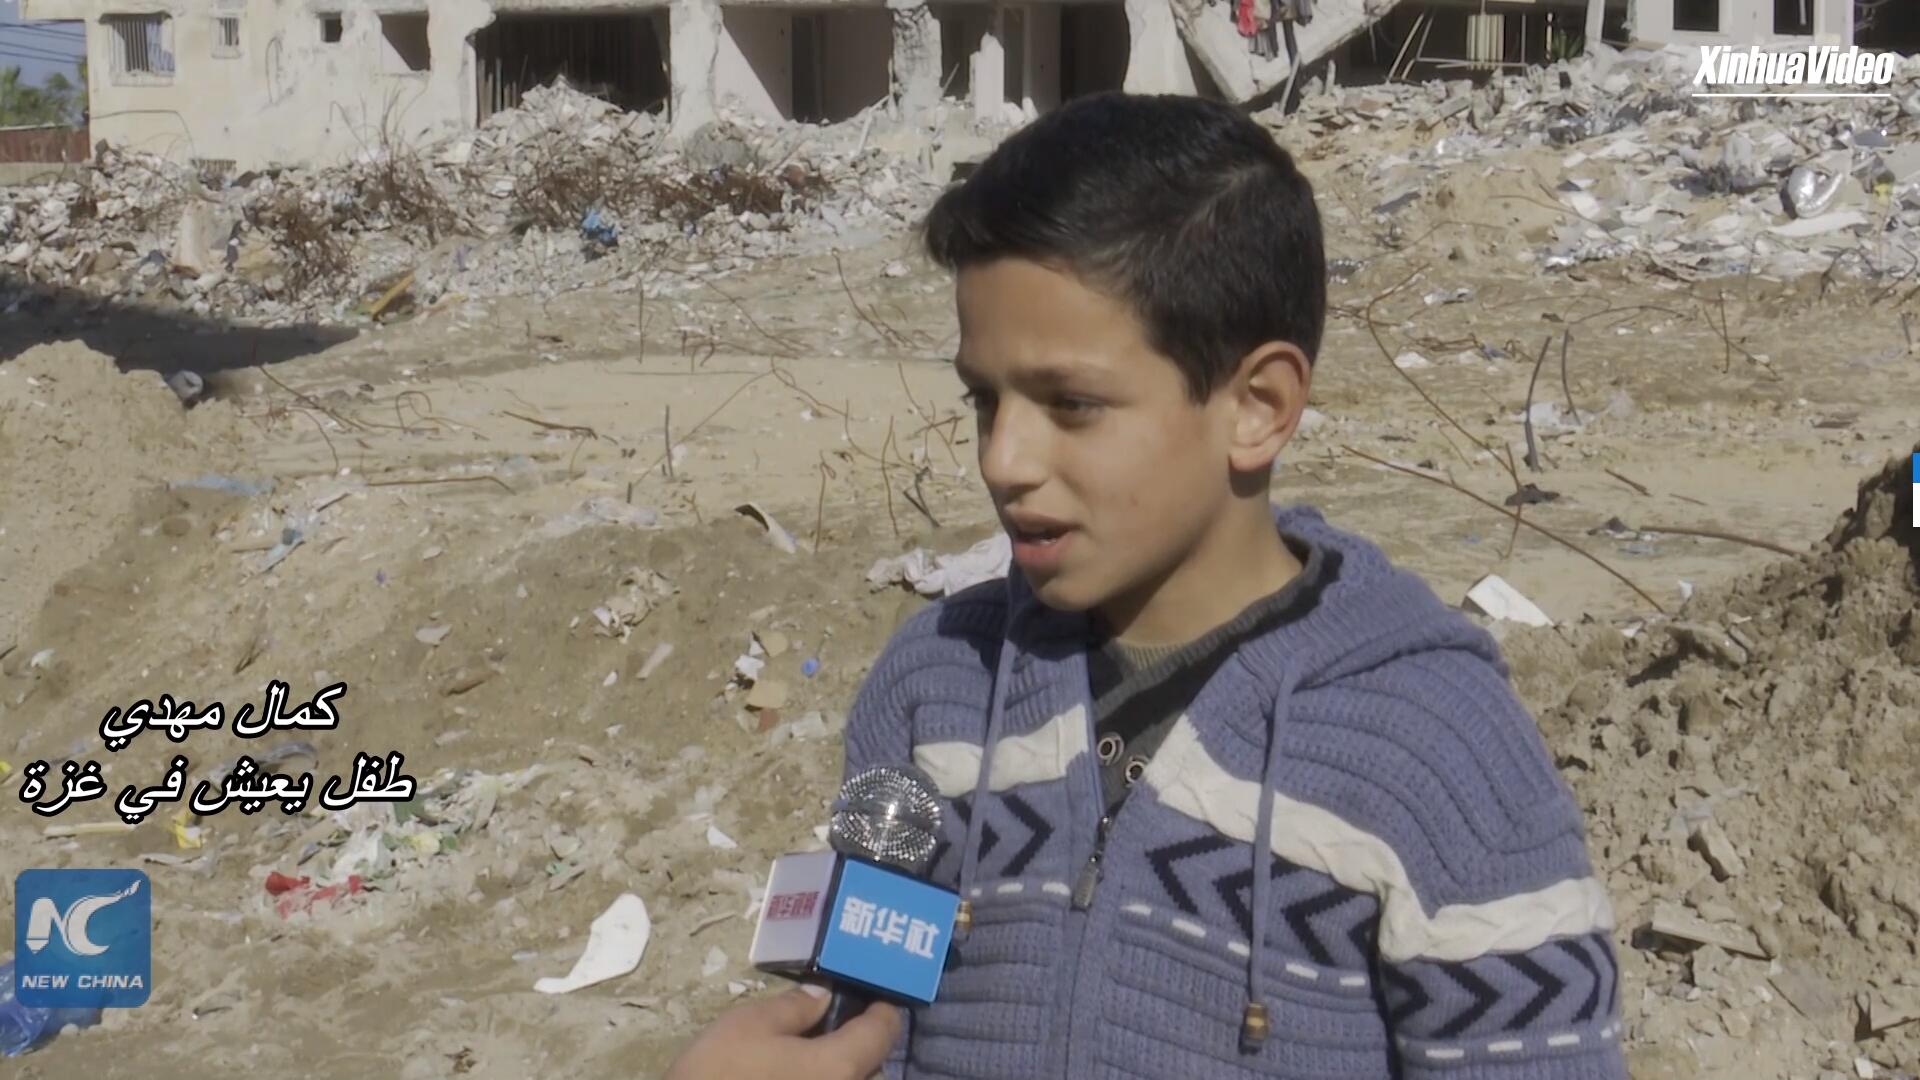 فيديو: طفل فلسطيني يأمل في العيش بسلام في غزة